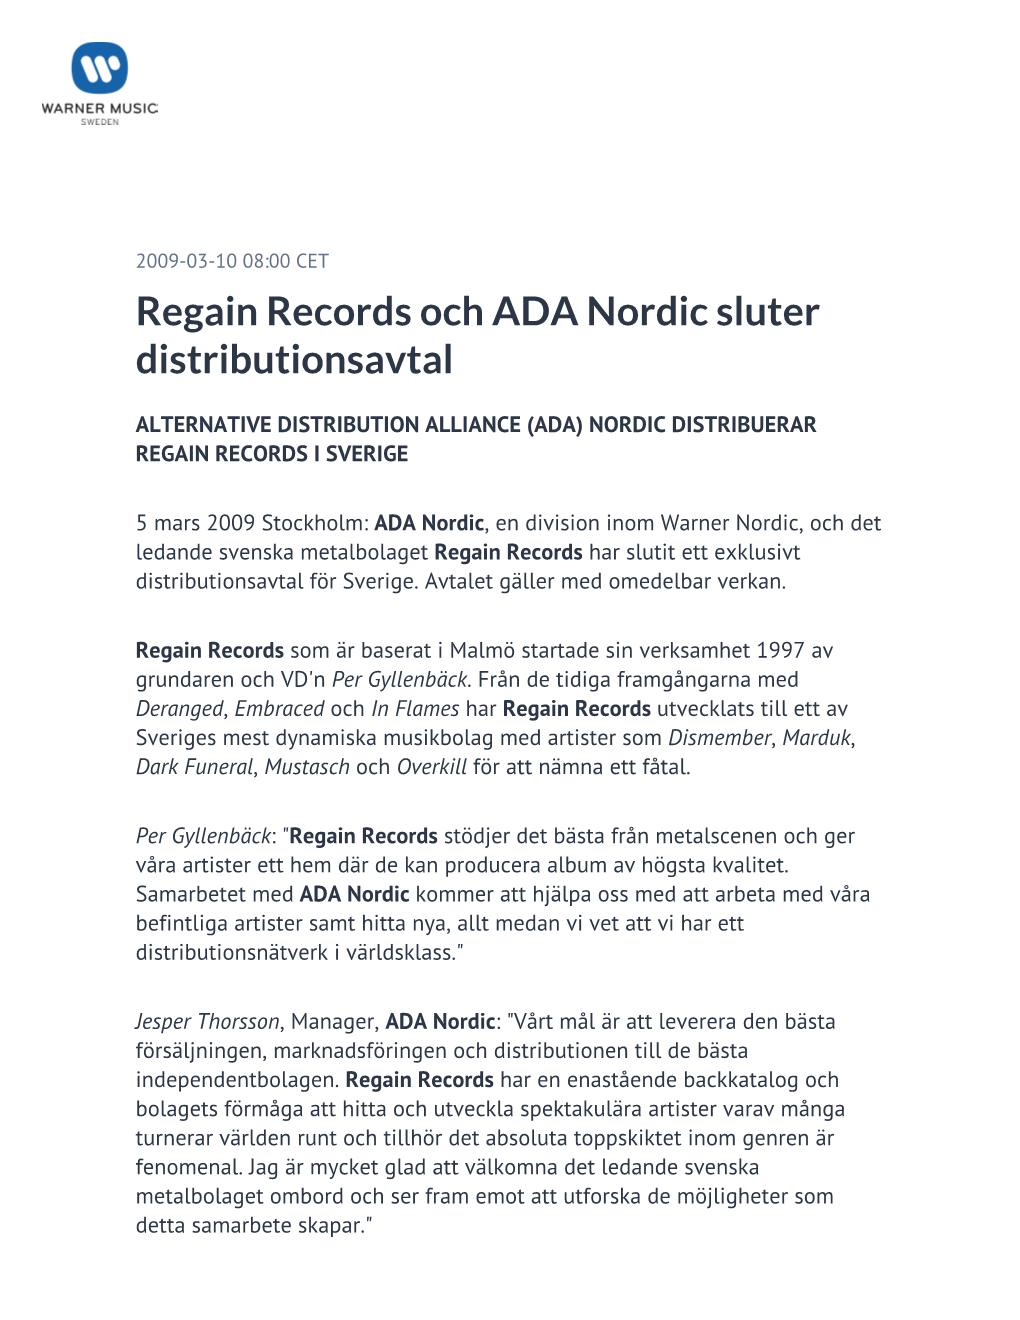 Regain Records Och ADA Nordic Sluter Distributionsavtal